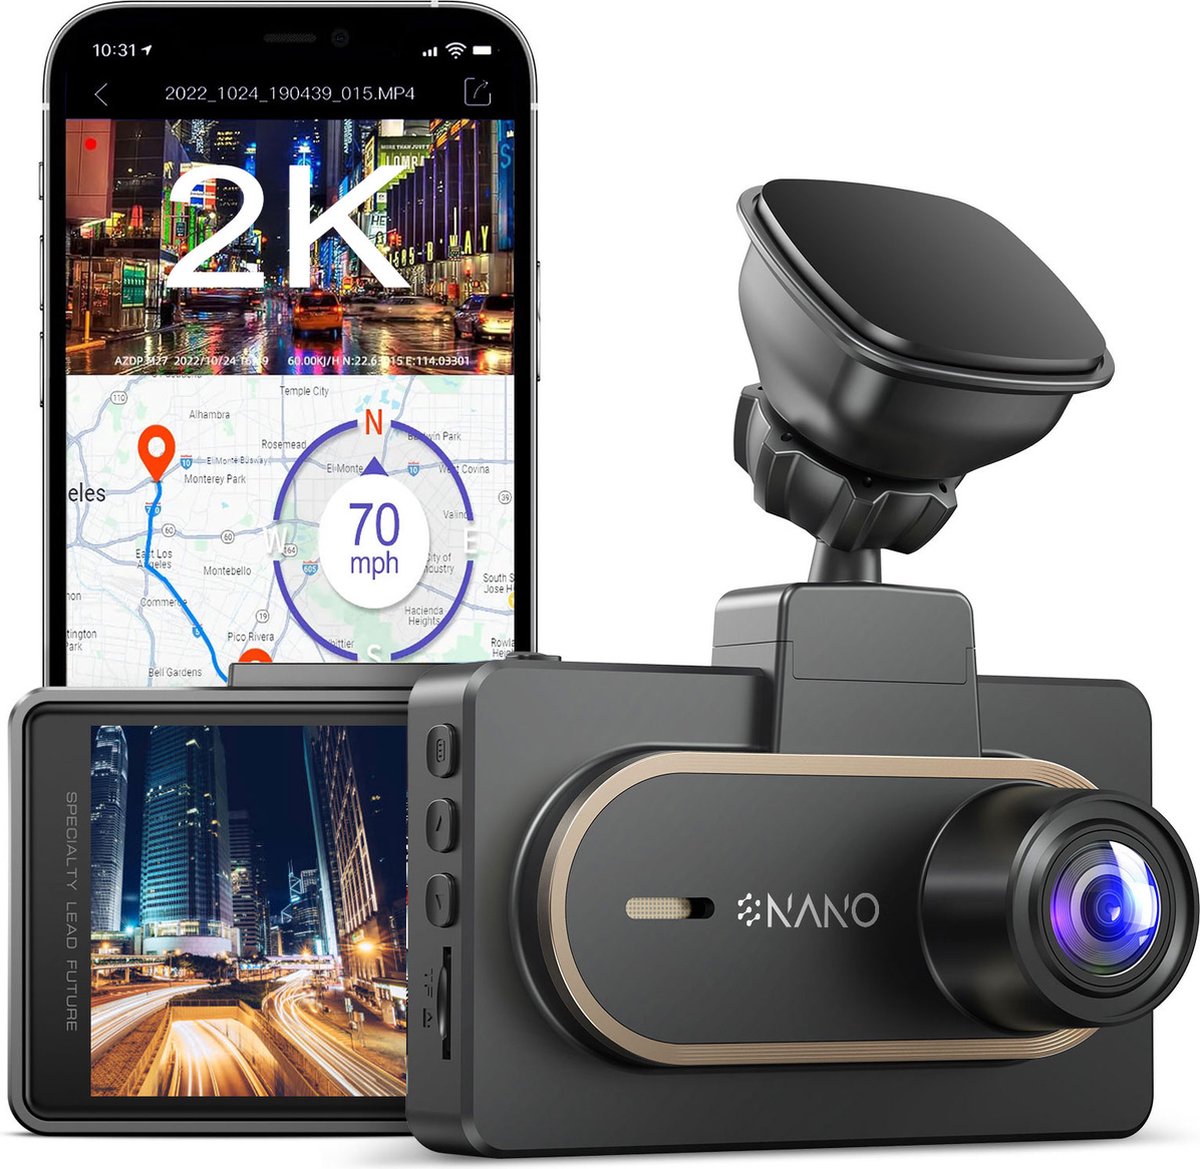 Nanocam M27 32gb dashcam voor auto - 2K QuadHD video - Wifi - GPS - 32gb SD - Super compact - 150 graden kijkhoek - Nachtzicht - Parkeermodus - 3.0 inch IPS LCD - 2023 model - dashcam voor auto met optionele achter camera